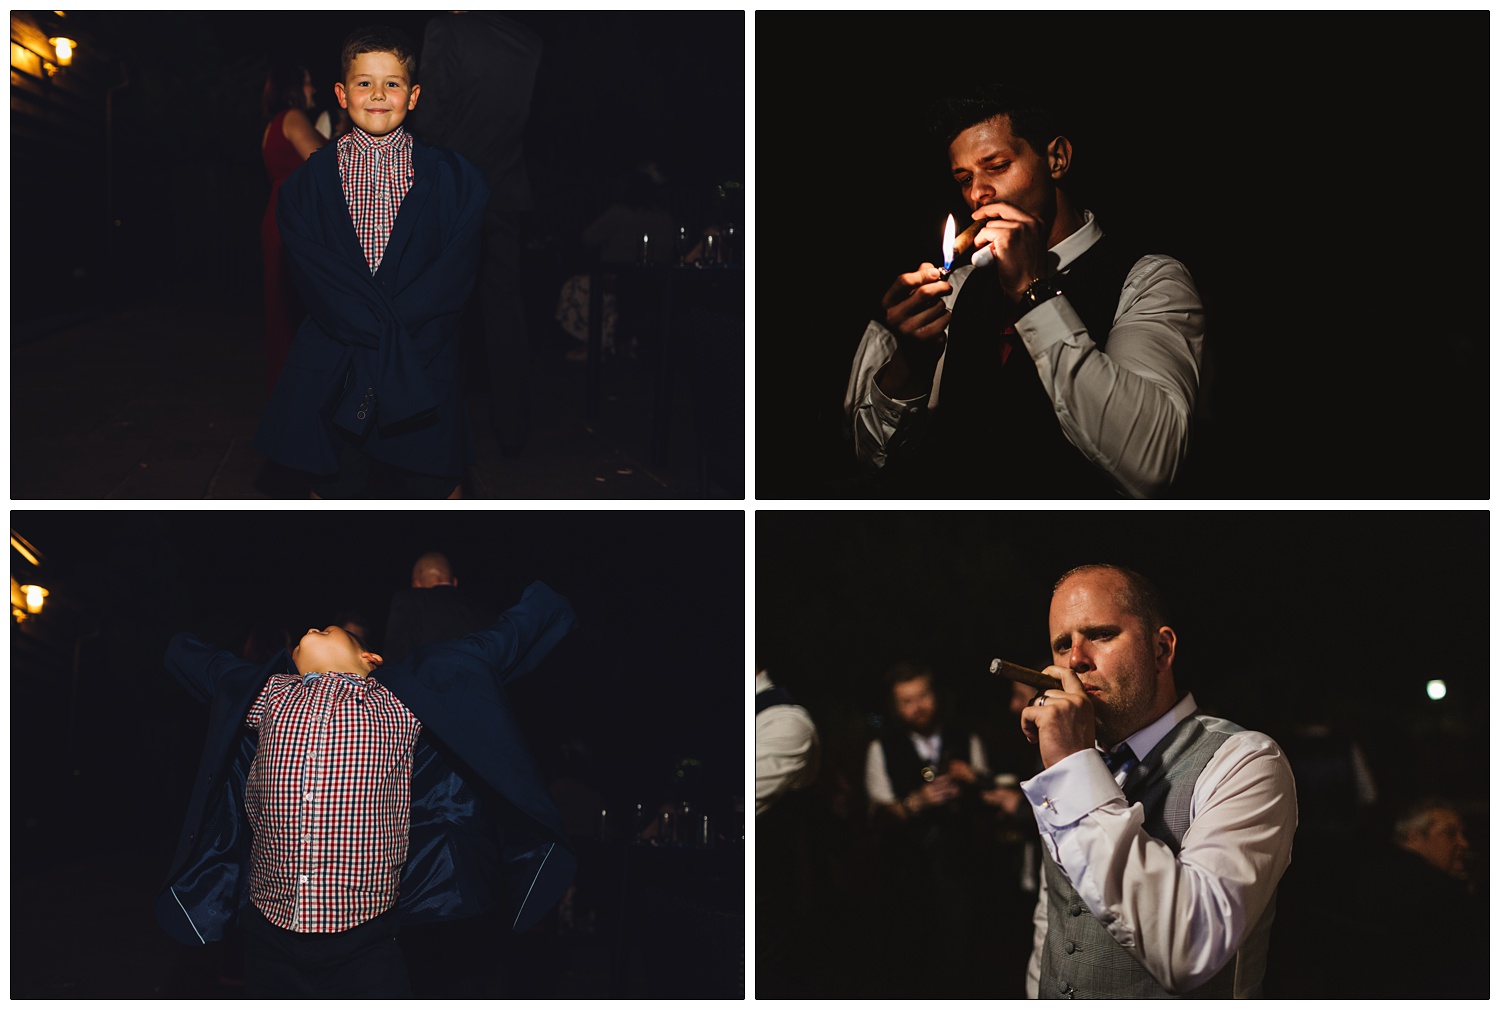 men at a wedding smoking cigars at night